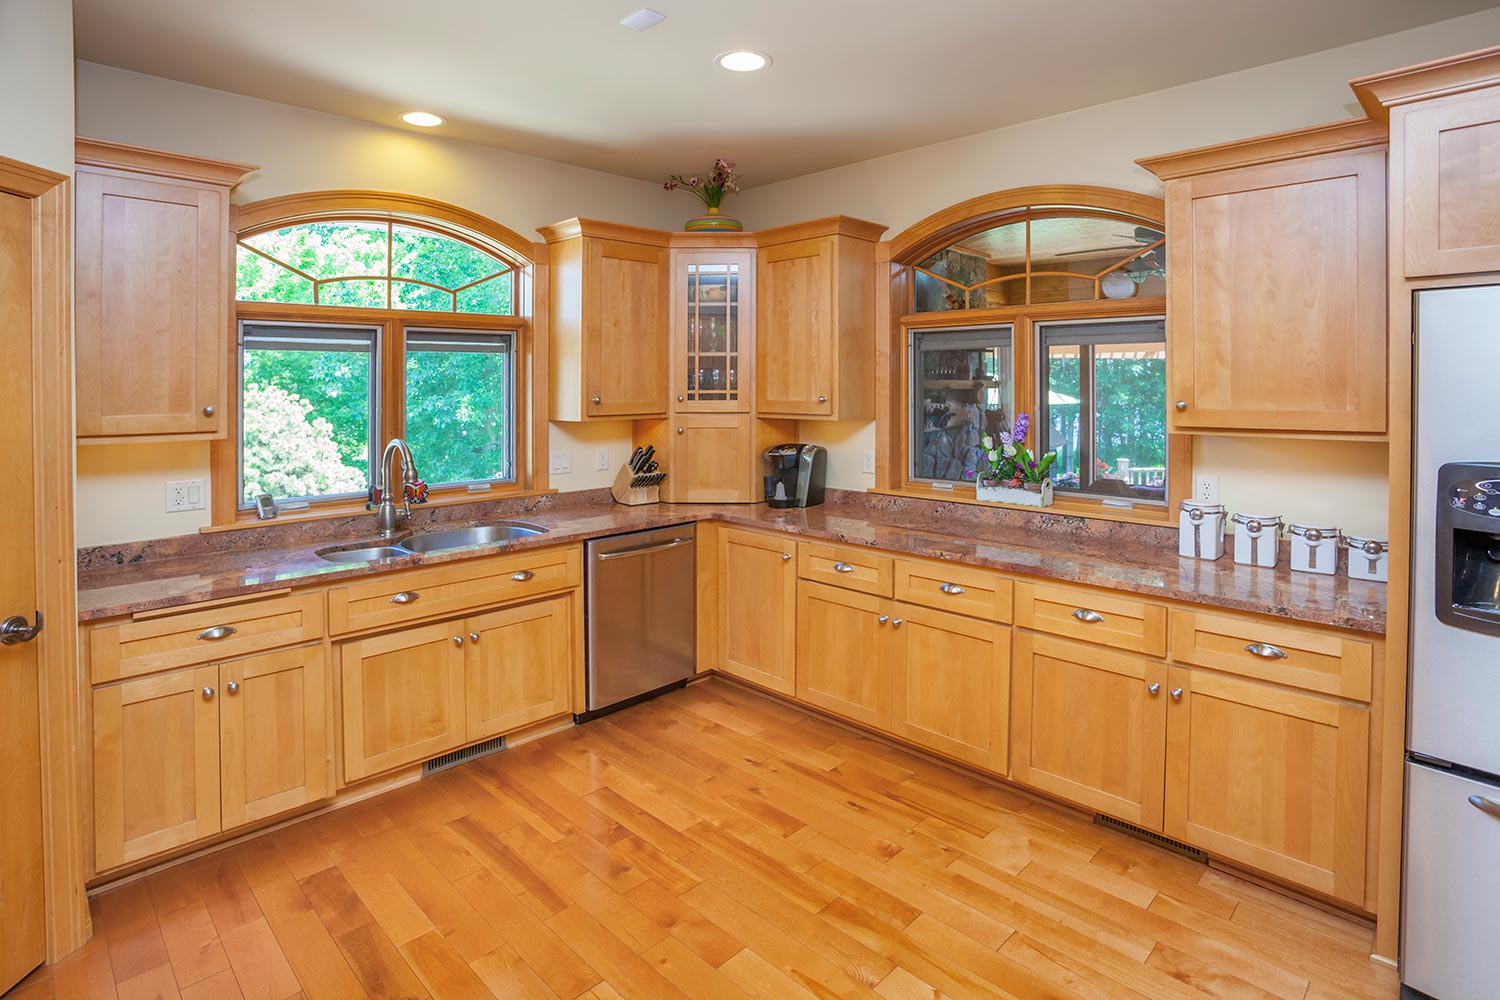 Dream kitchen with hardwood floor